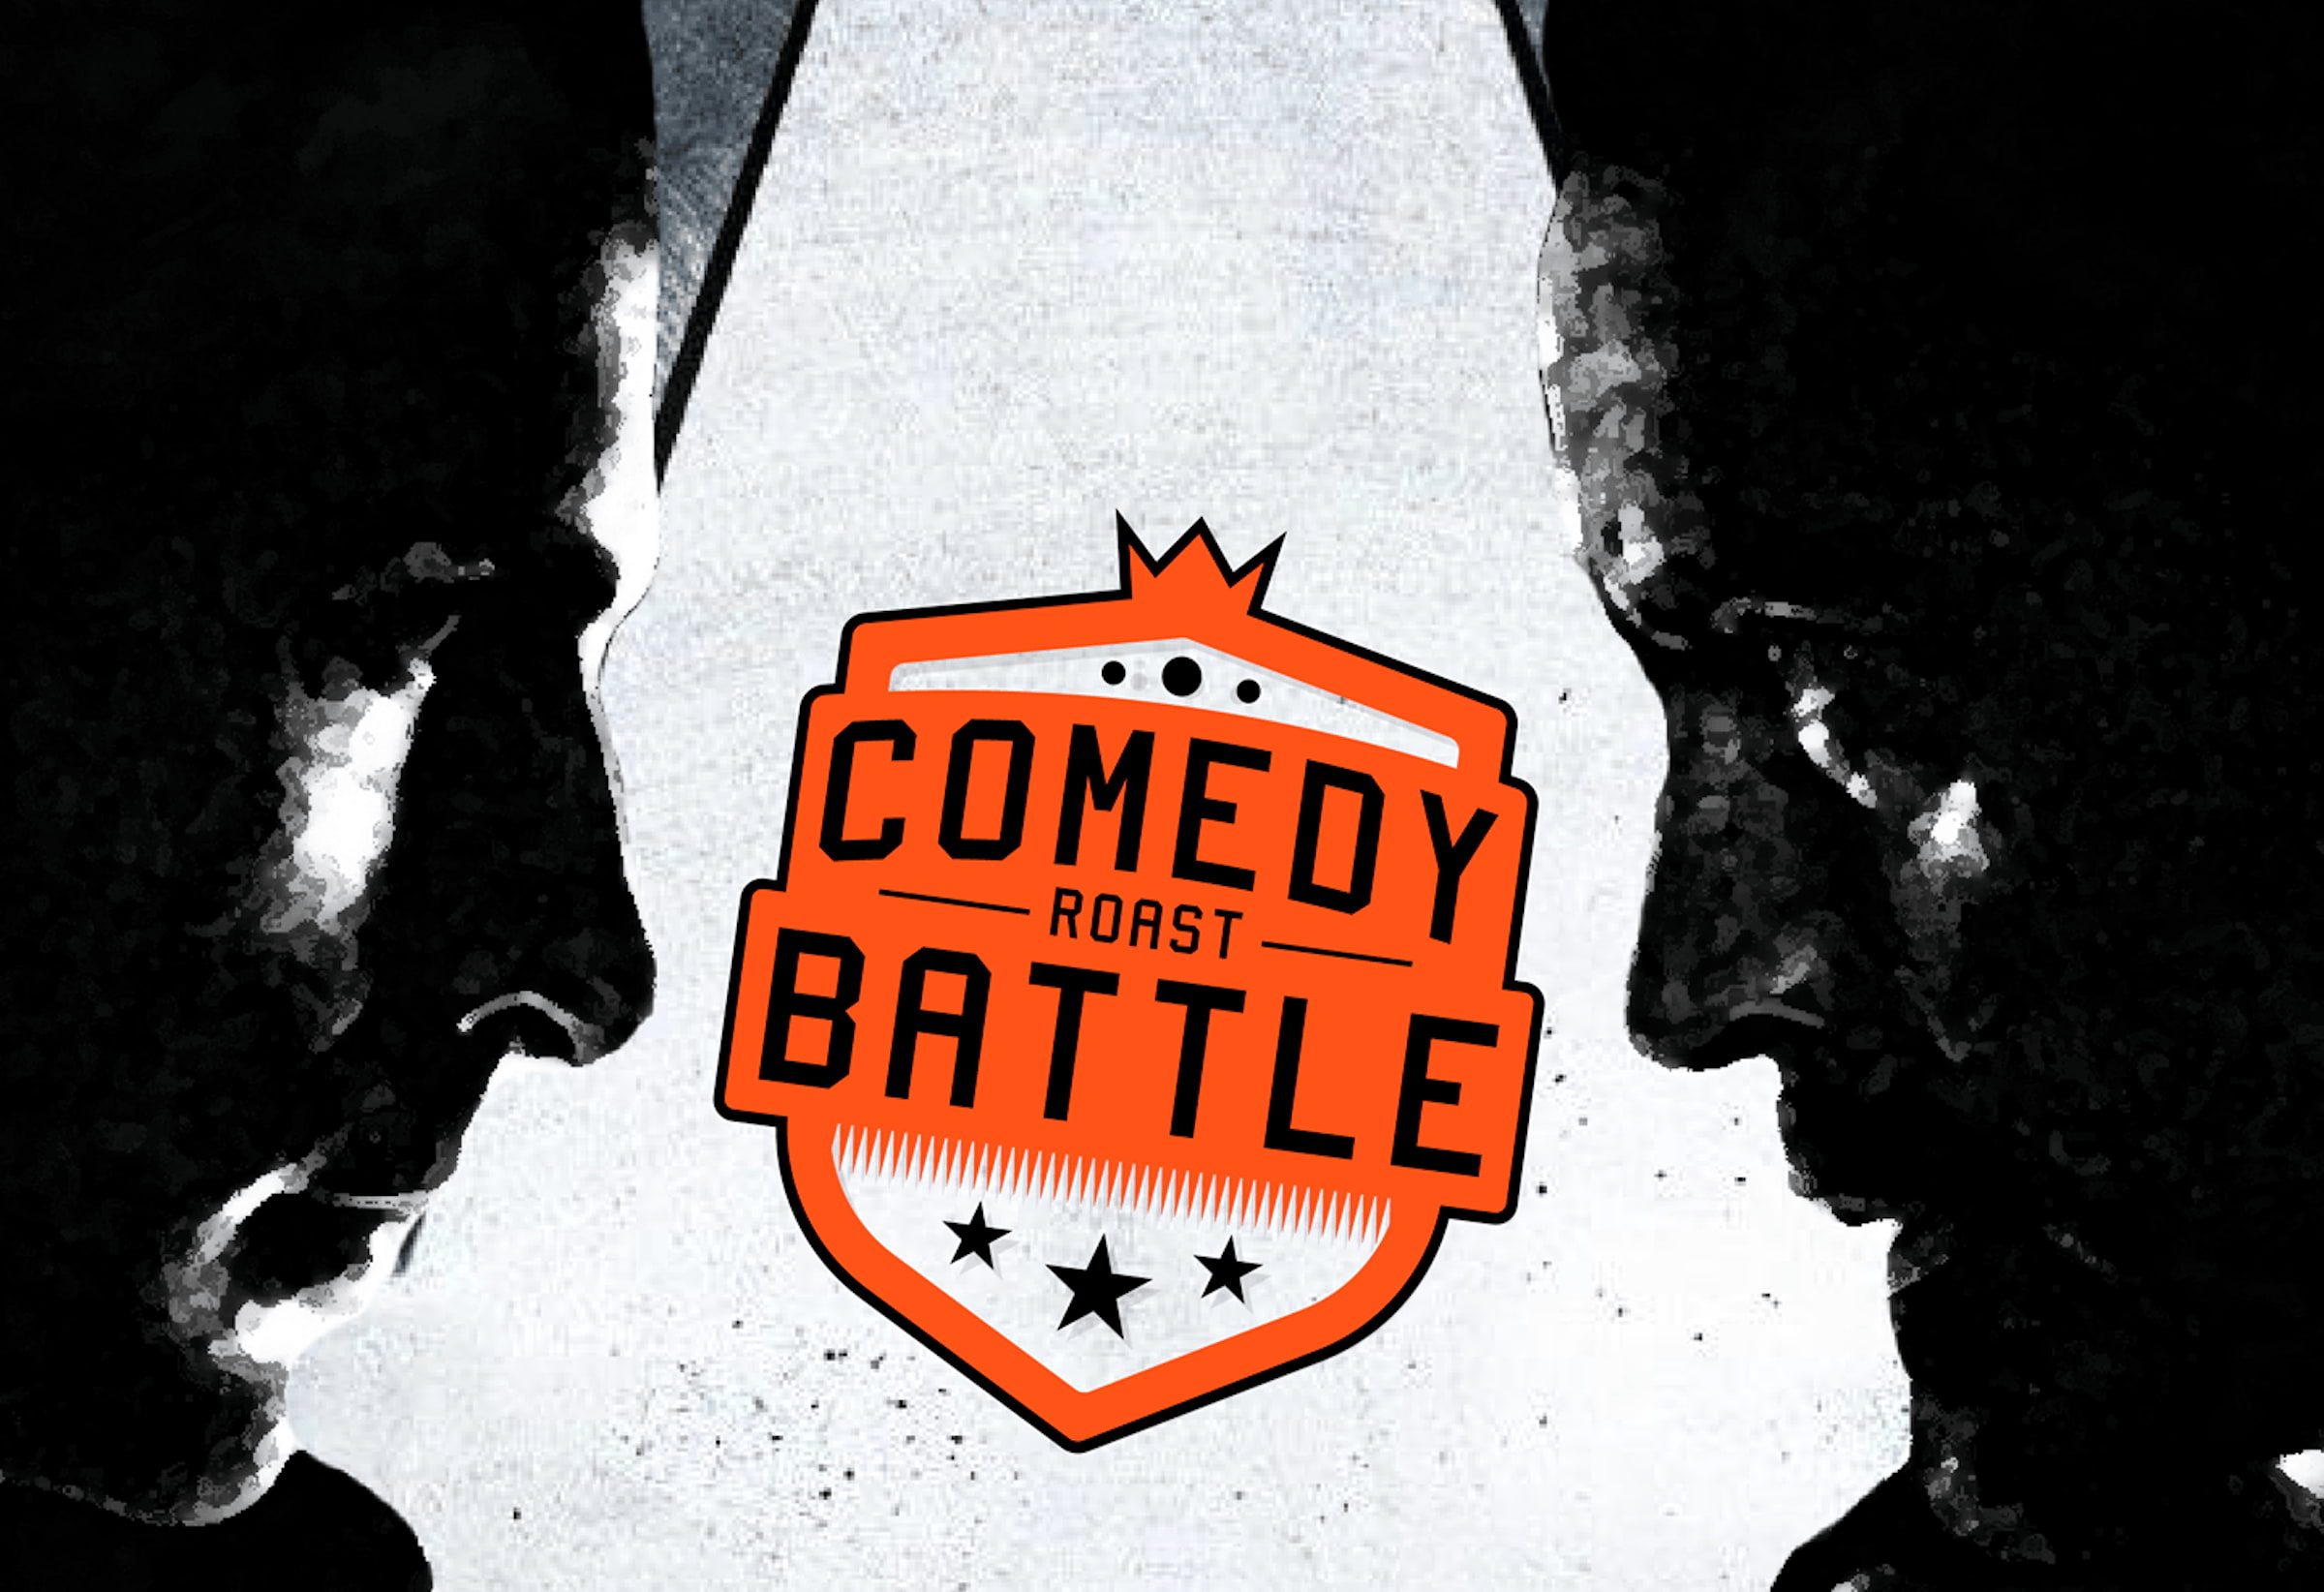 Comedy Roast Battle är tillbaka